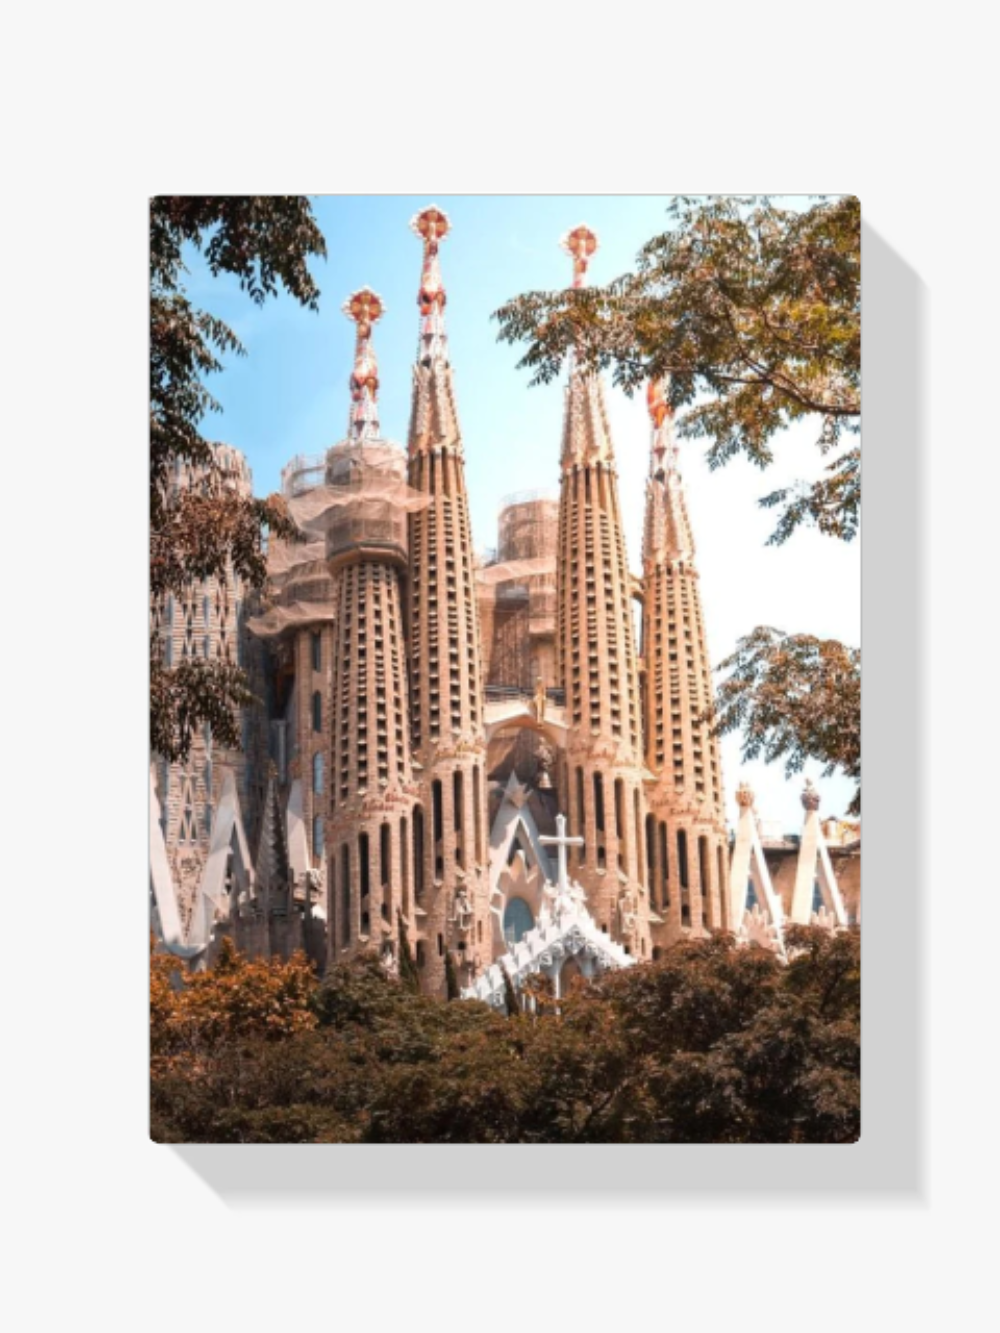 La Sagrada Familia Diamond Painting